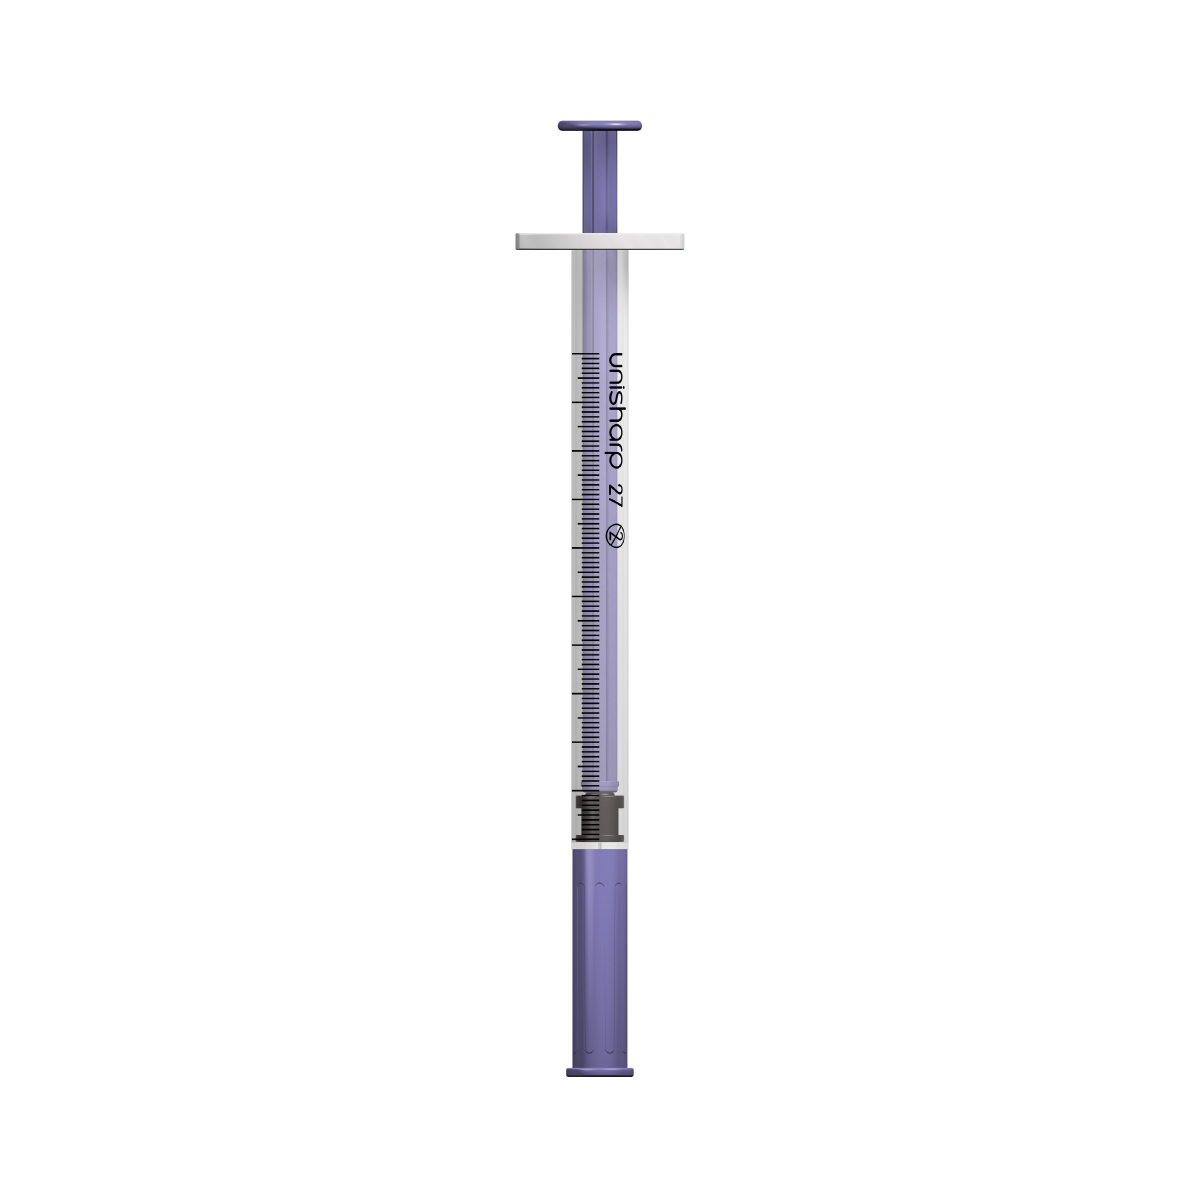 Unisharp 1ml 27G fixed needle syringe: Violet